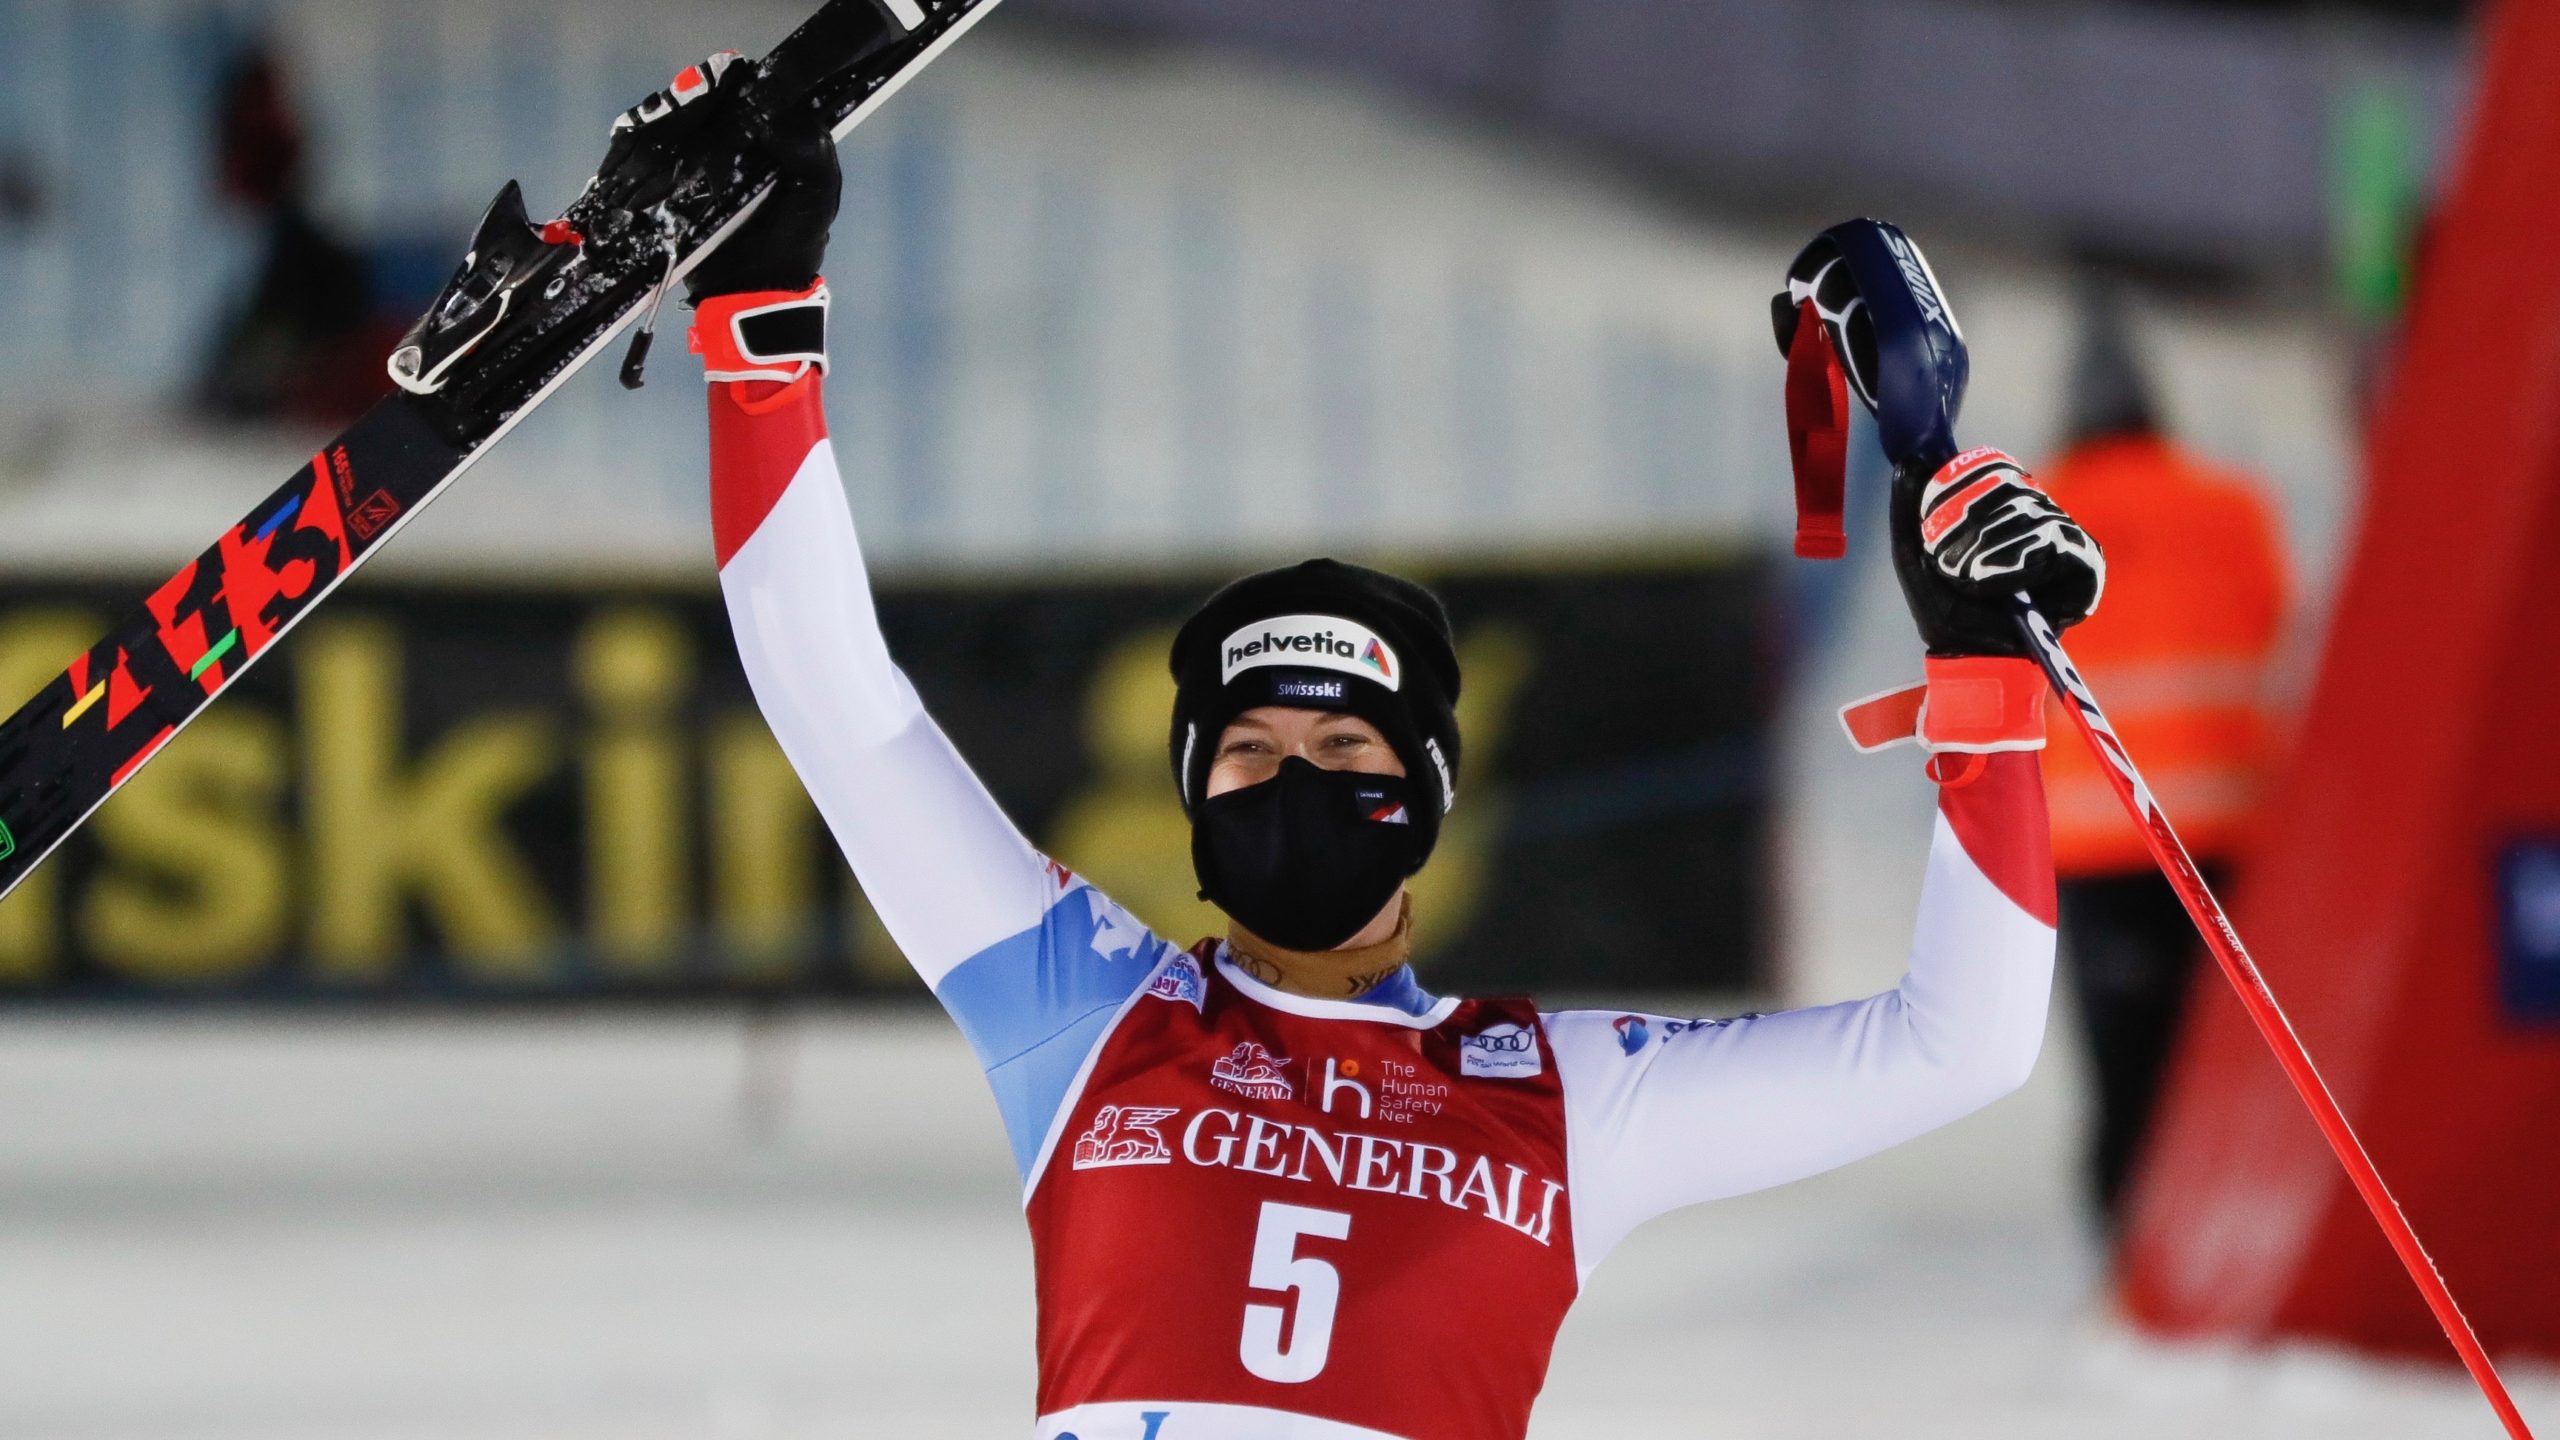 Michelle Gisin: "C'était une course folle" | SkiActu.ch